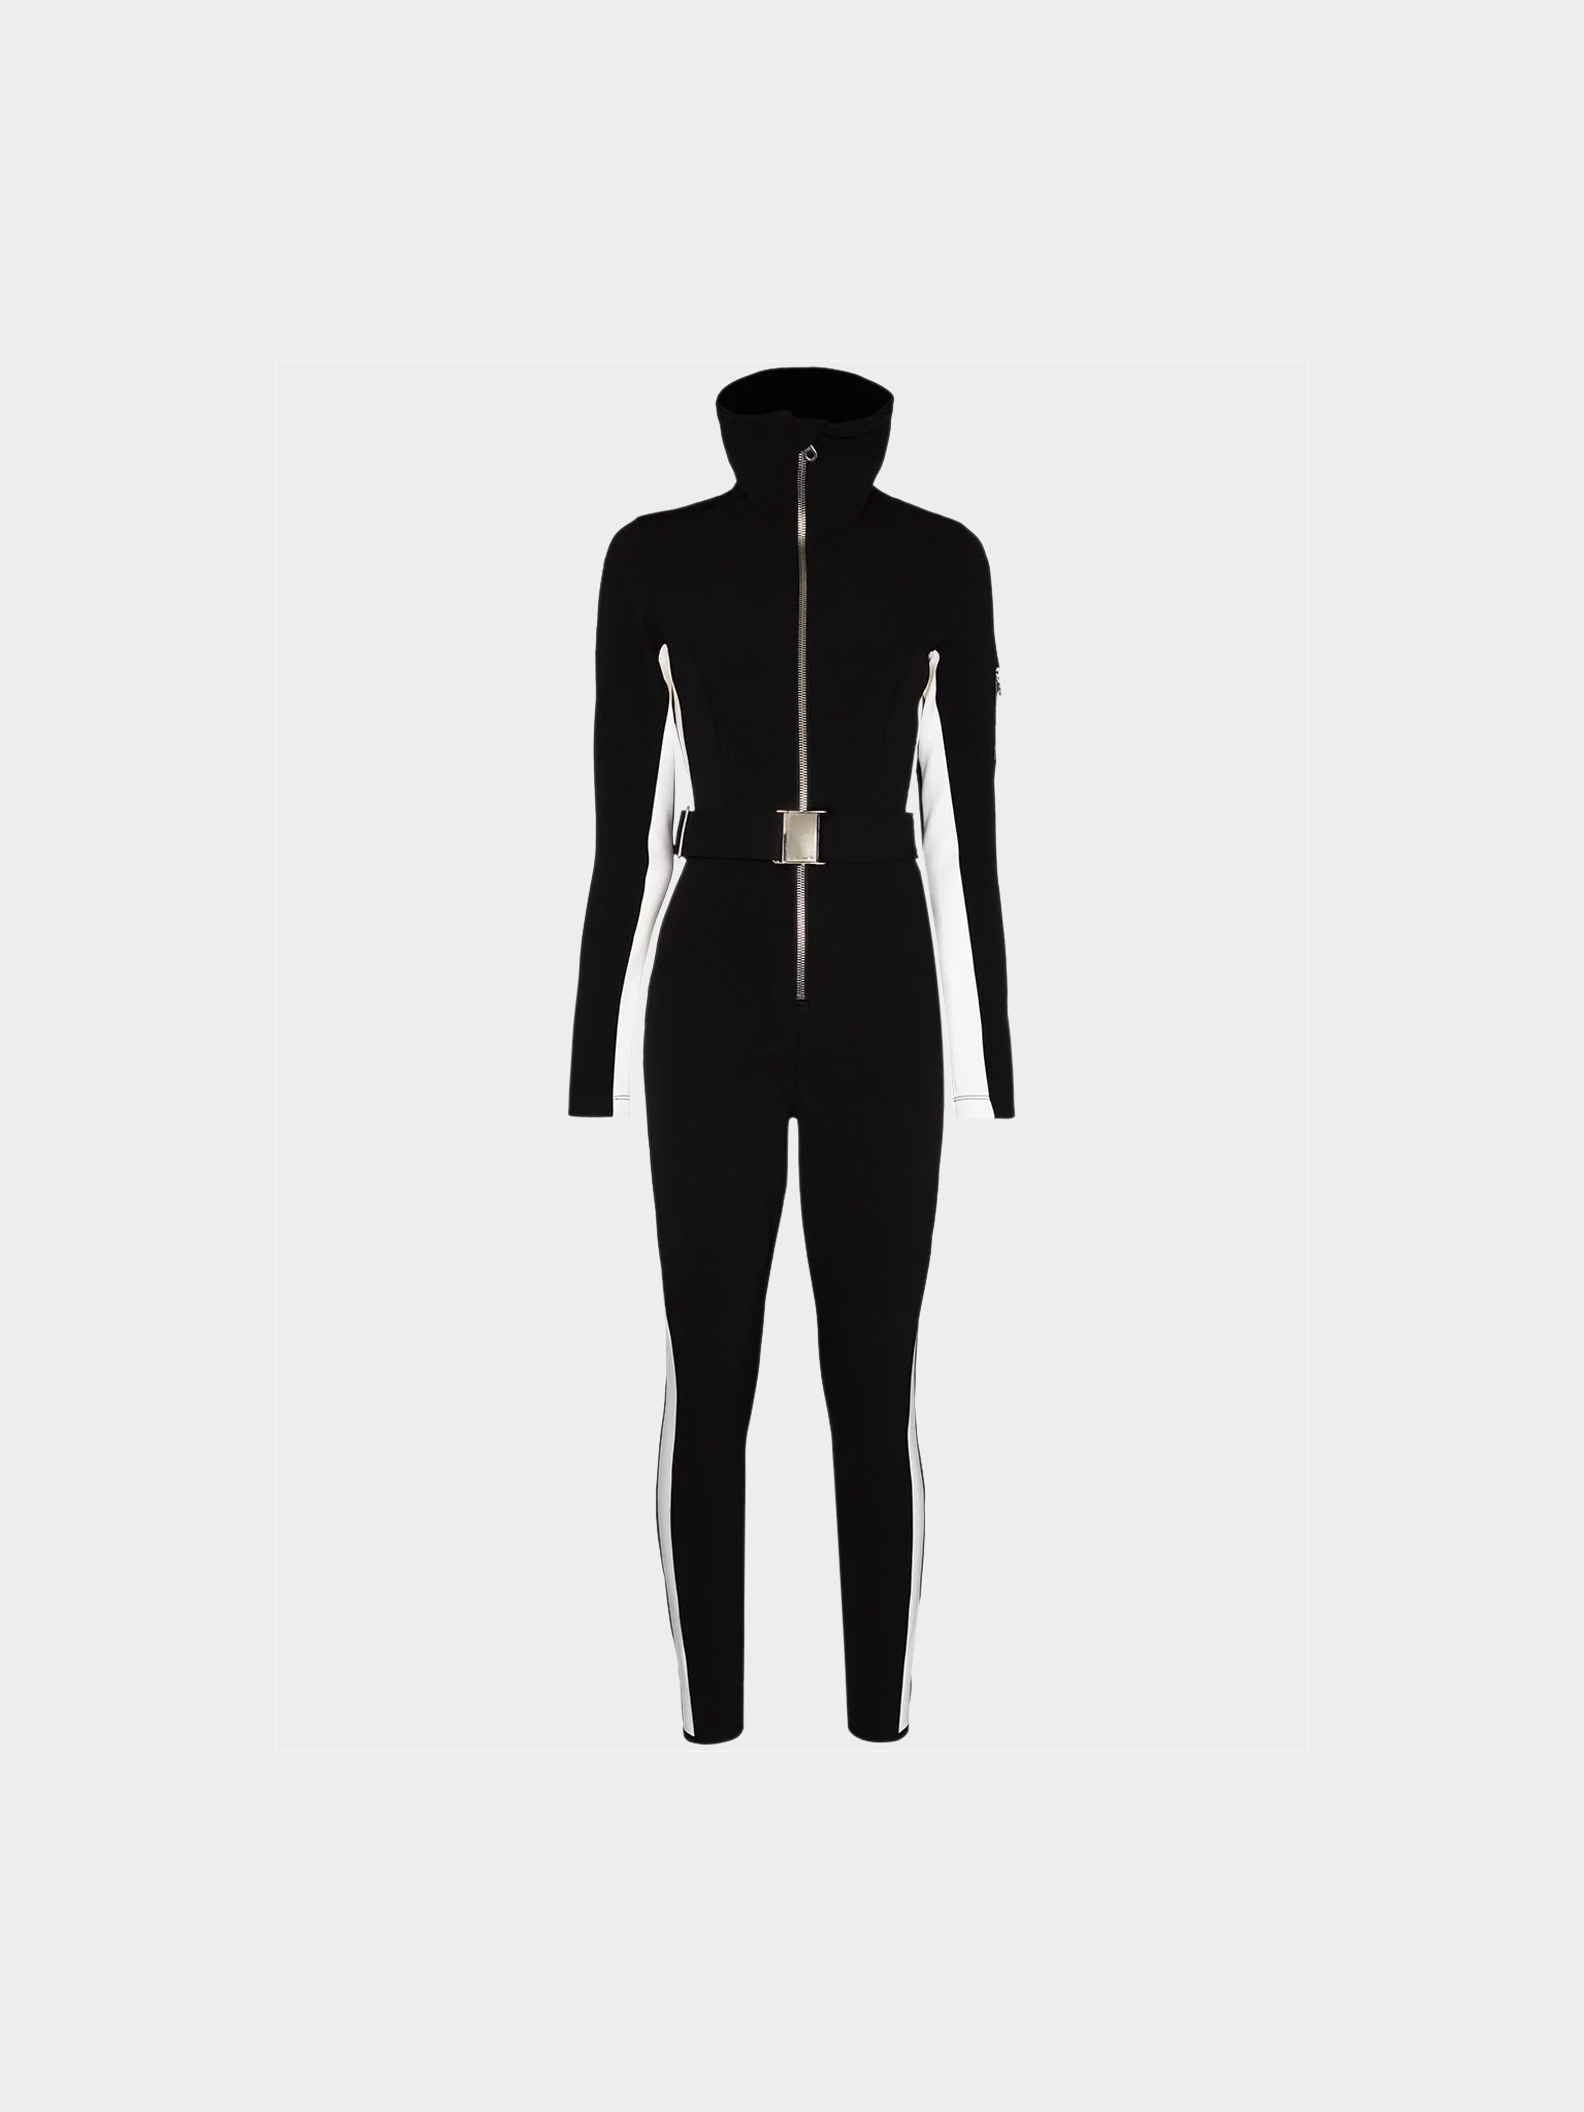 Womens Ski Suit | Custom Buckle Engraving, Cold Resistant, Slimfit